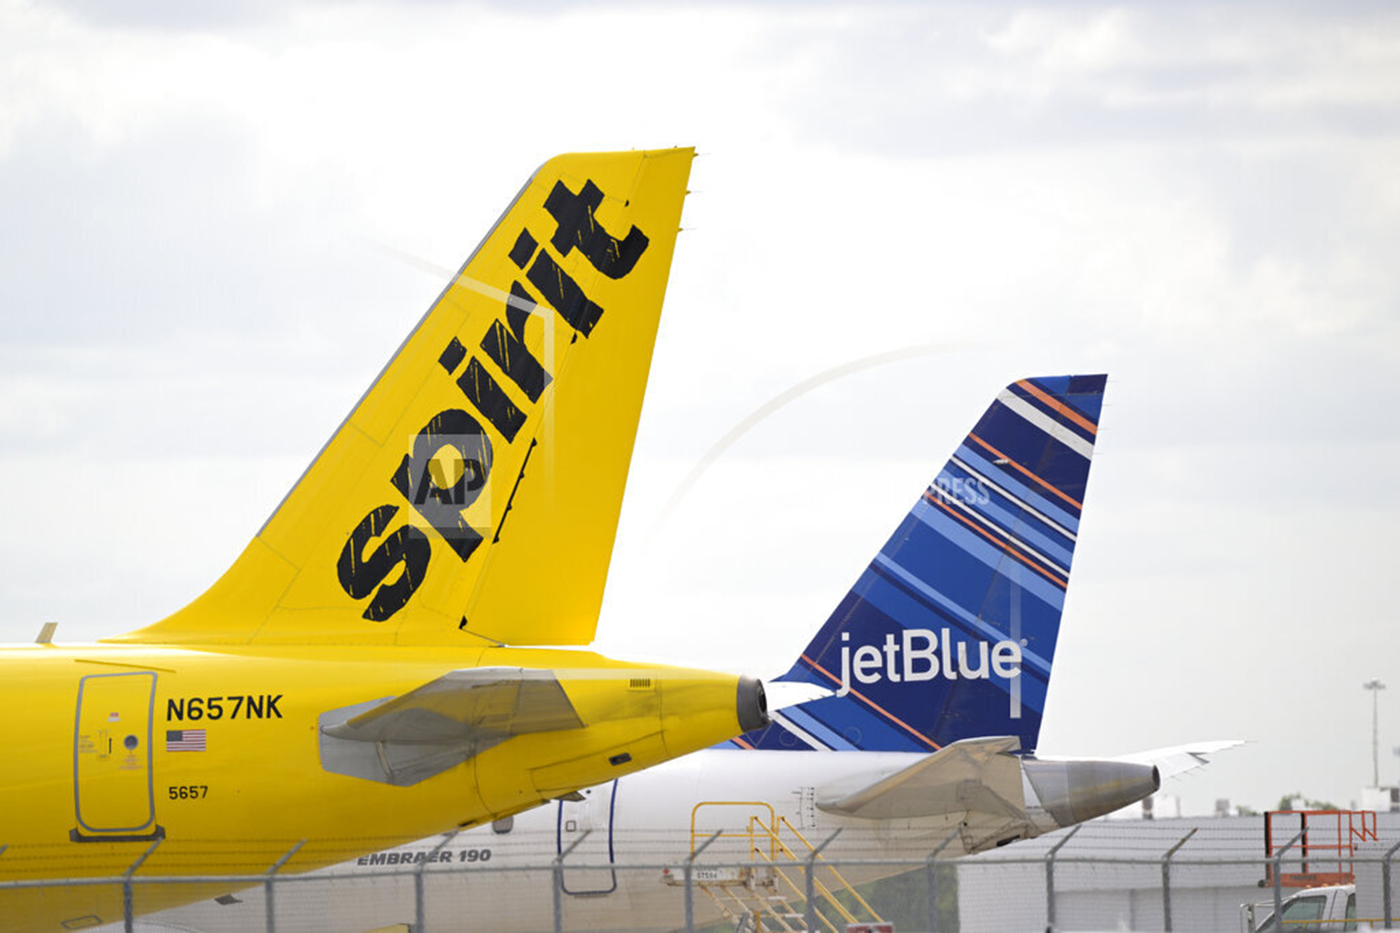 灵翼航空公司和喷气航空公司相邻飞机尾翼